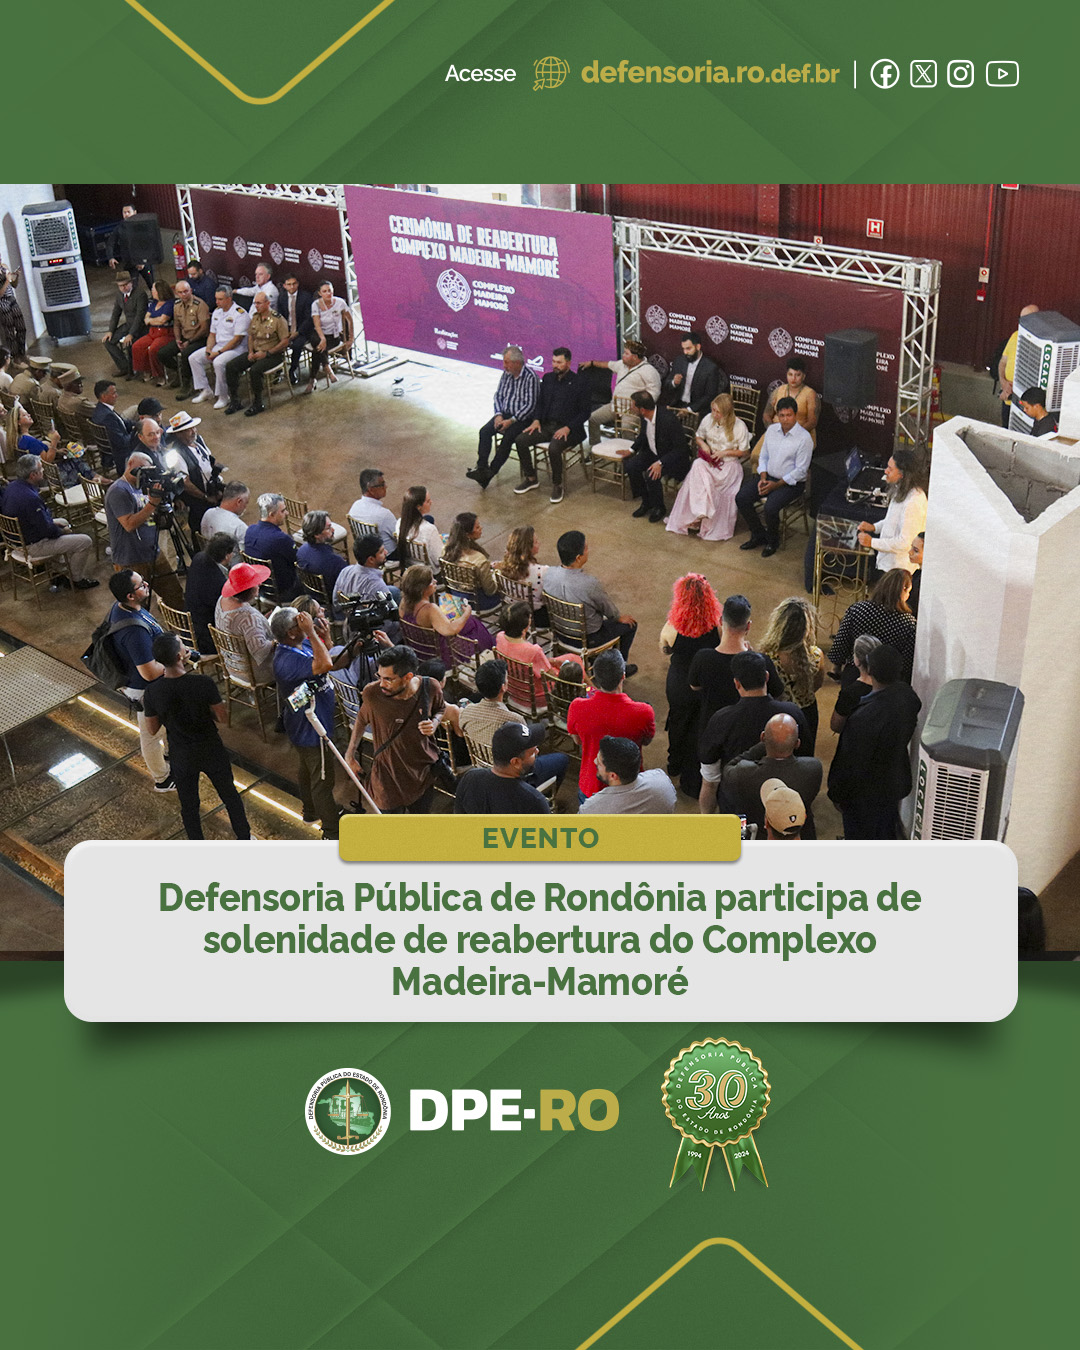 Defensoria Pública de Rondônia participa de solenidade de reabertura do Complexo Madeira-Mamoré